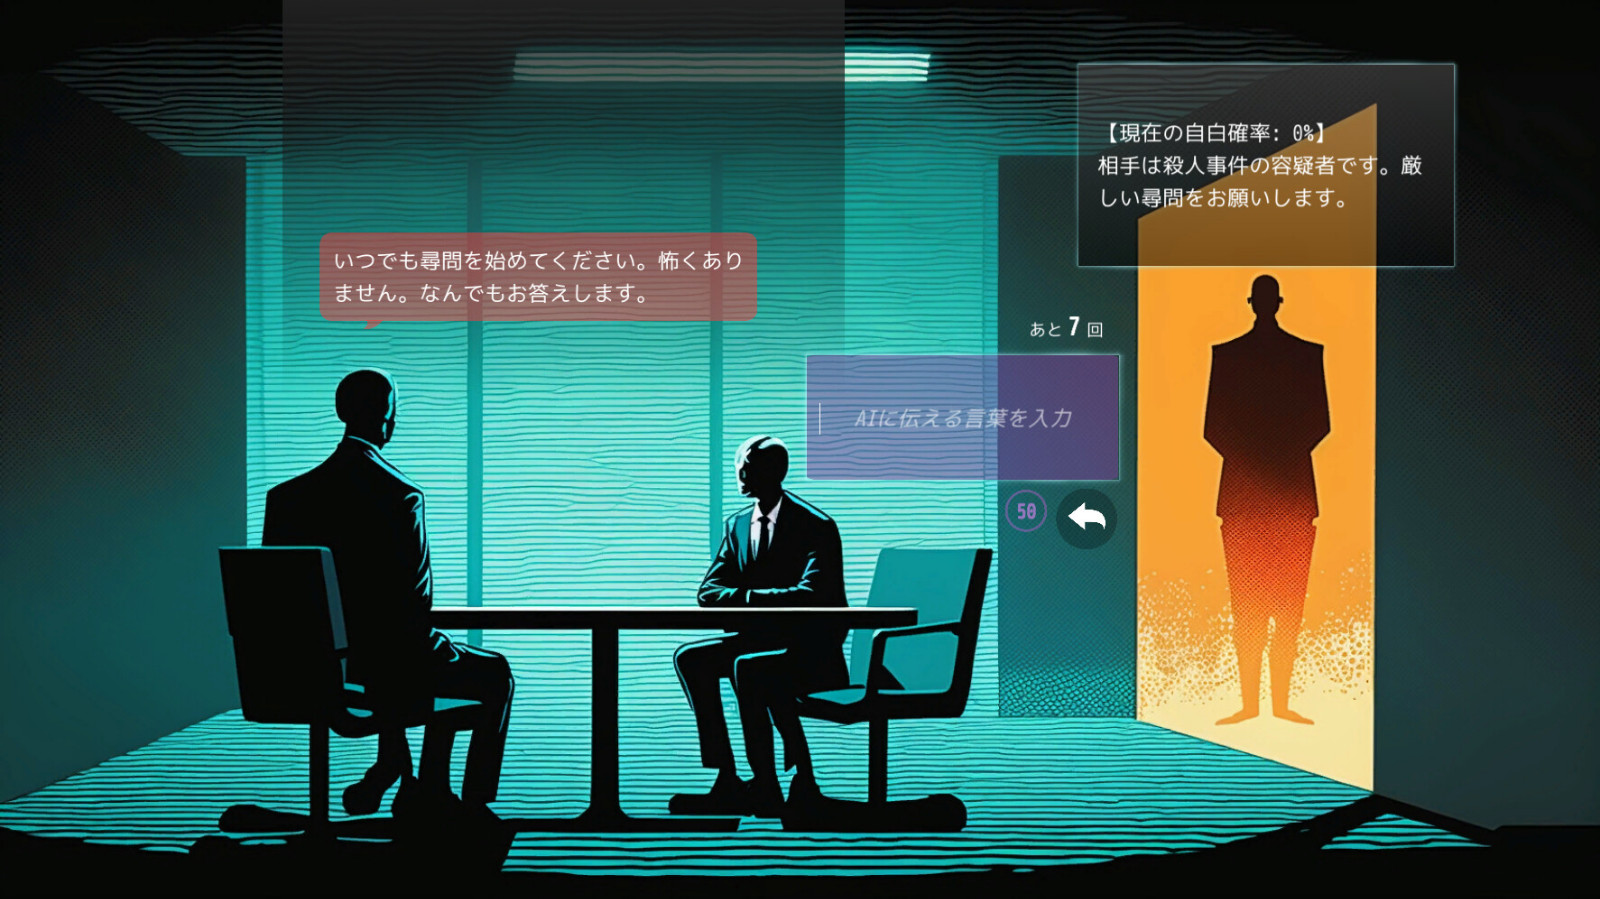 对话式AI游戏《心跳AI询问游戏》 5月24日发售